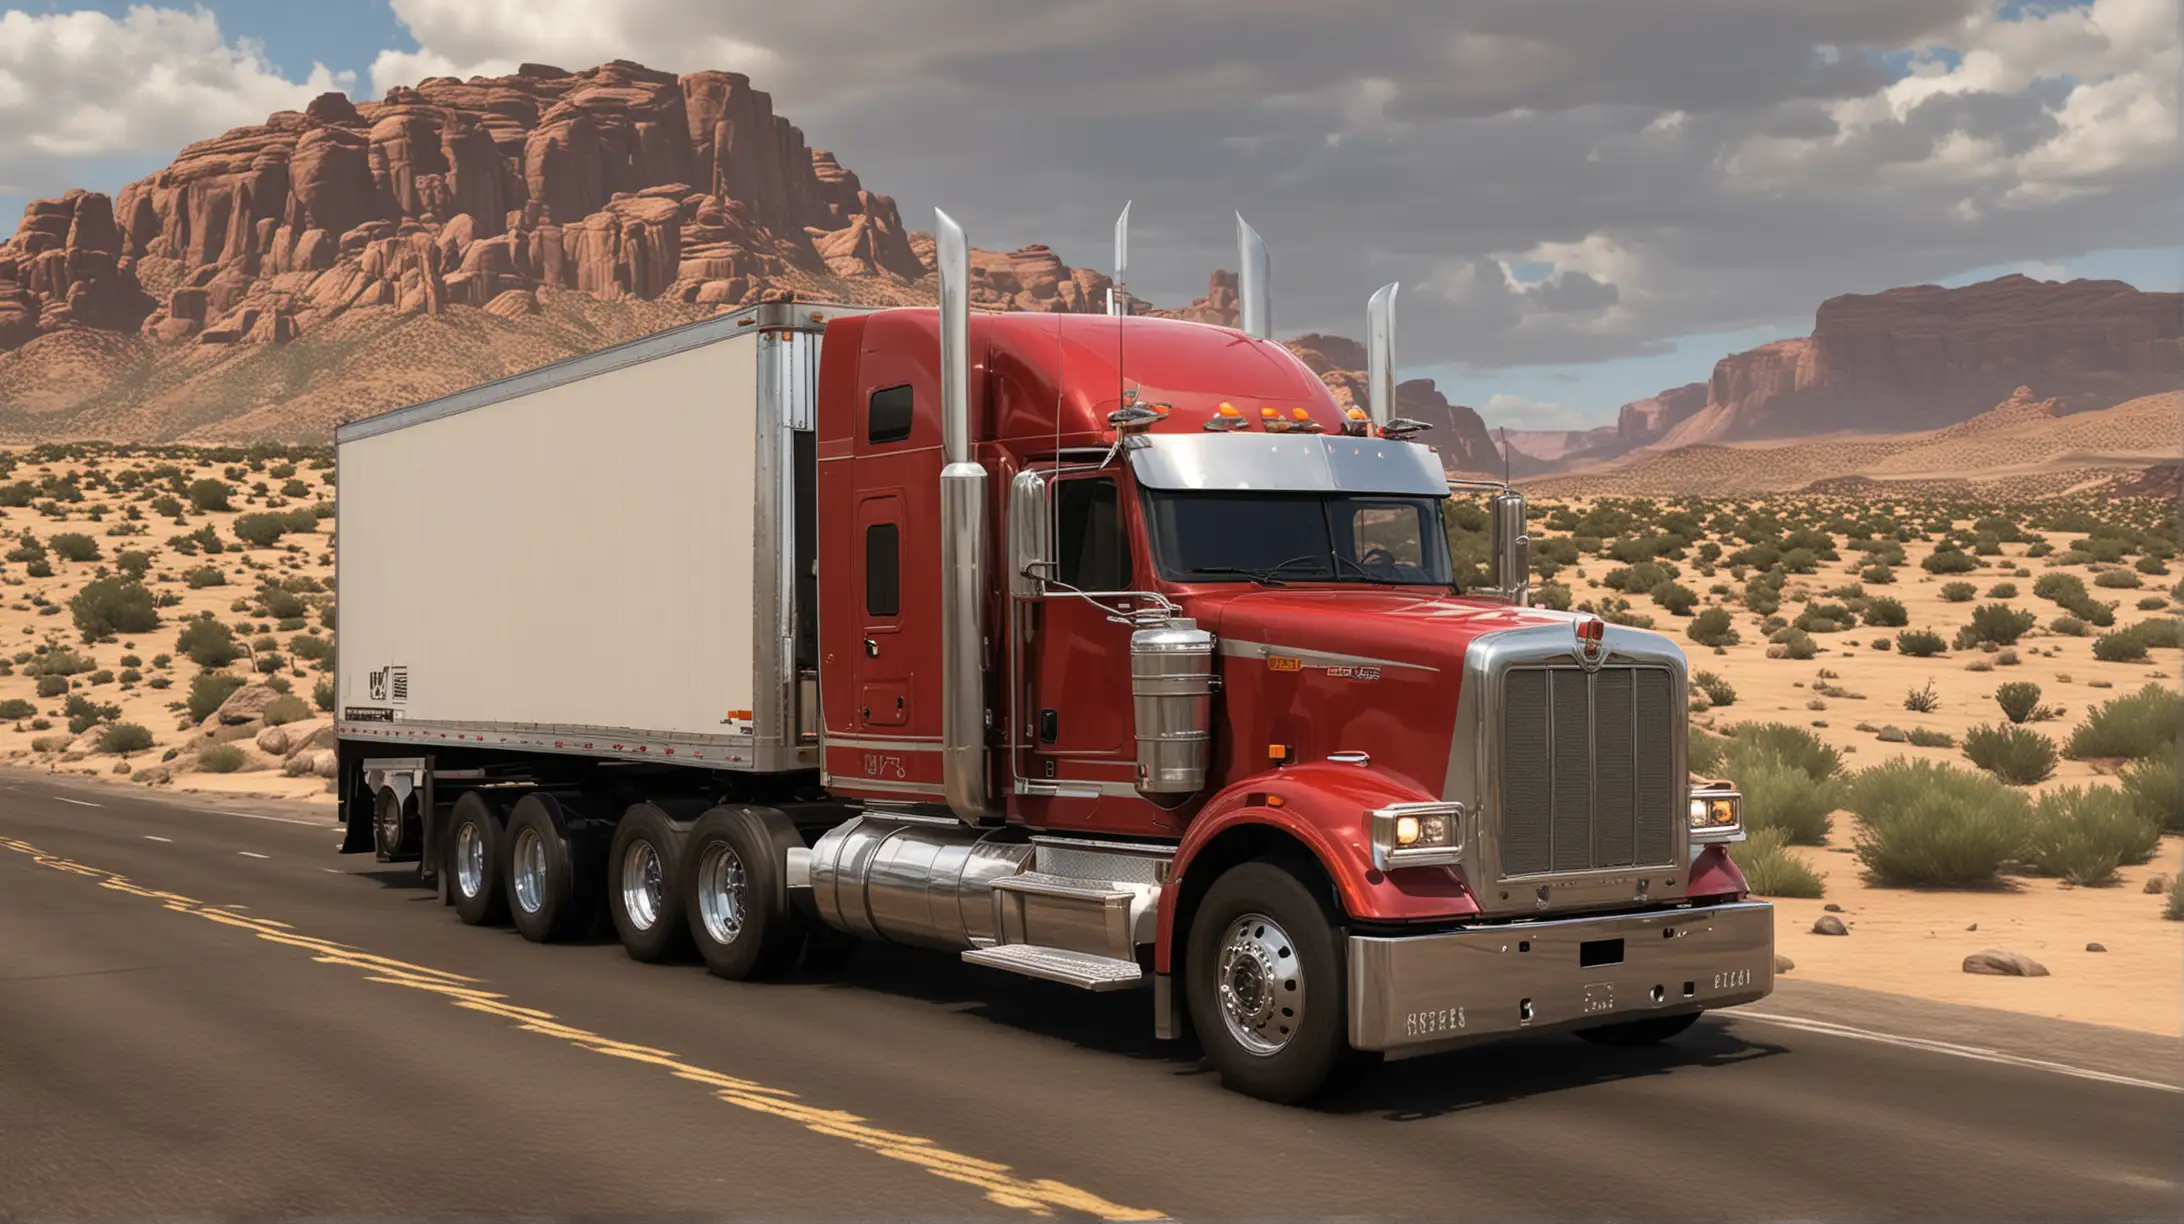 Explore Amazing Locations with Realistic Semi Trucks in Truck Simulator USA